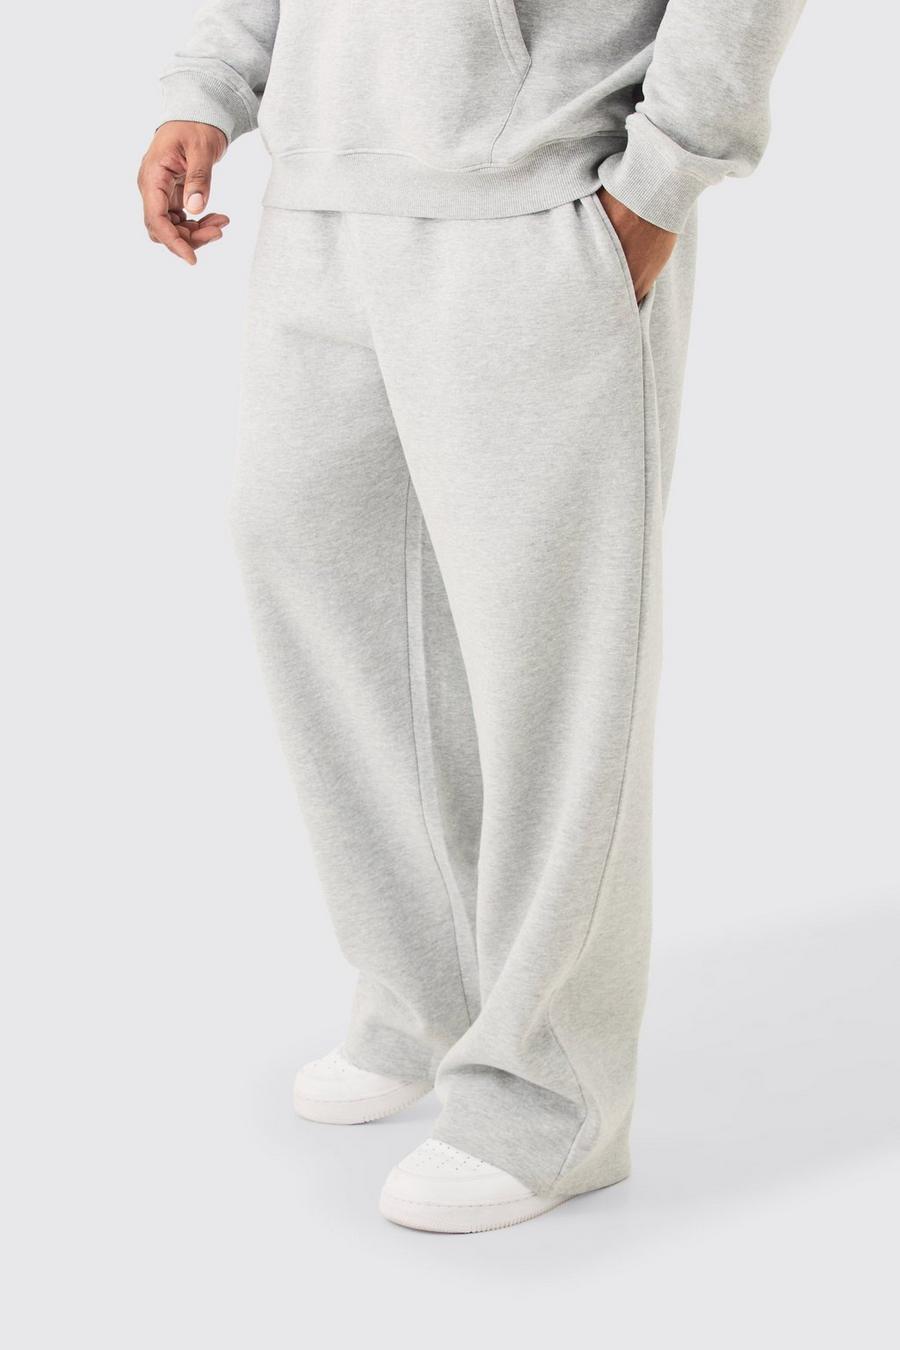 Pantalón deportivo Plus básico holgado gris jaspeado, Grey marl